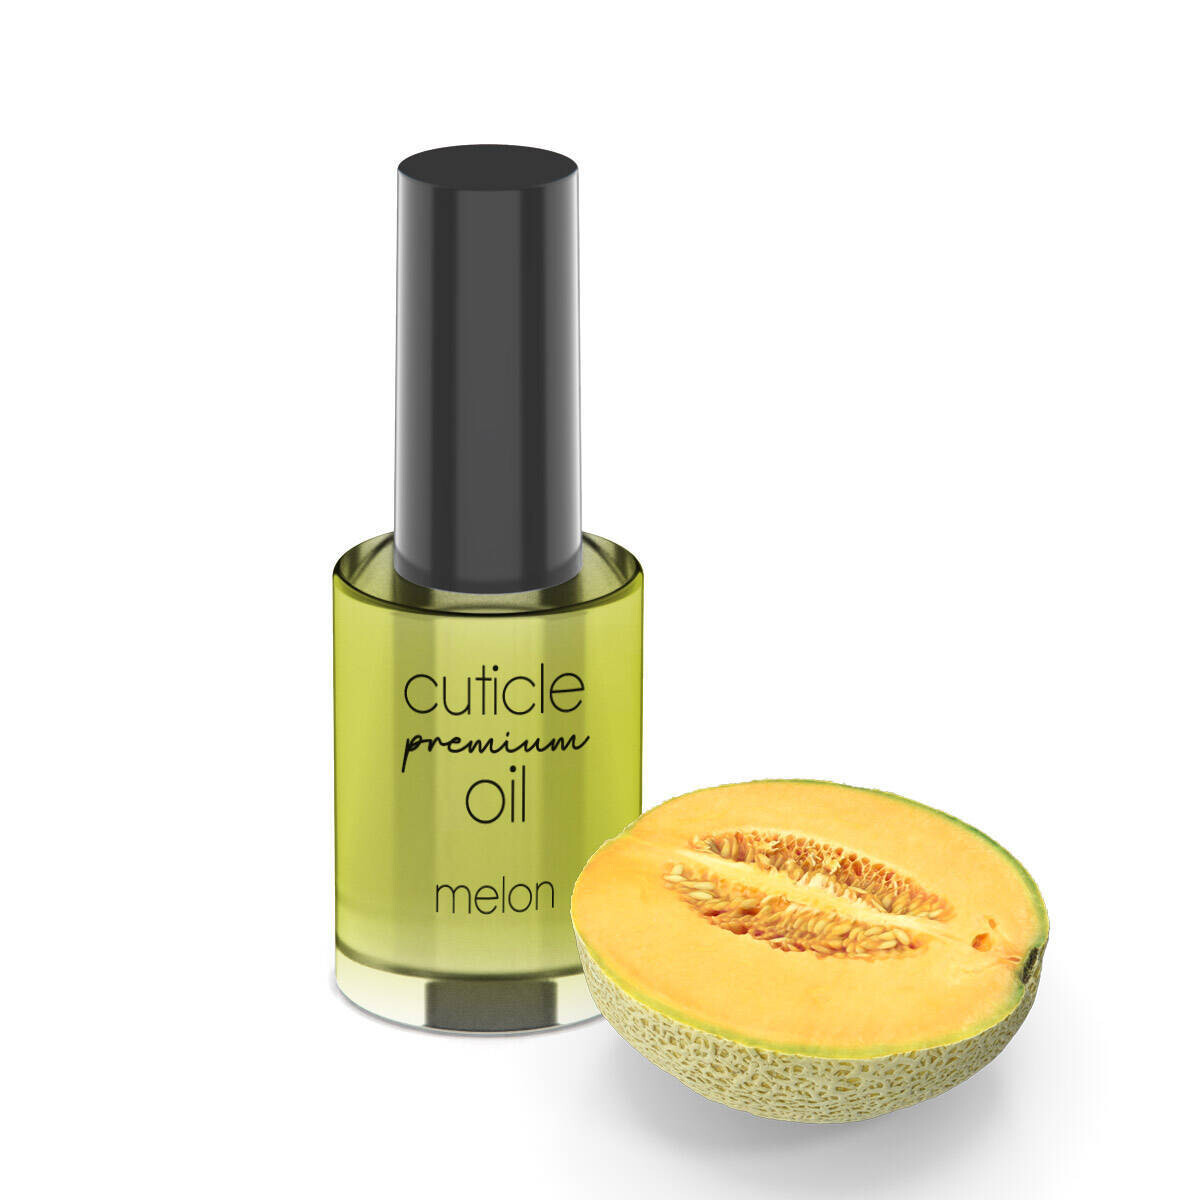 Cuticle oil premium melon 11ml